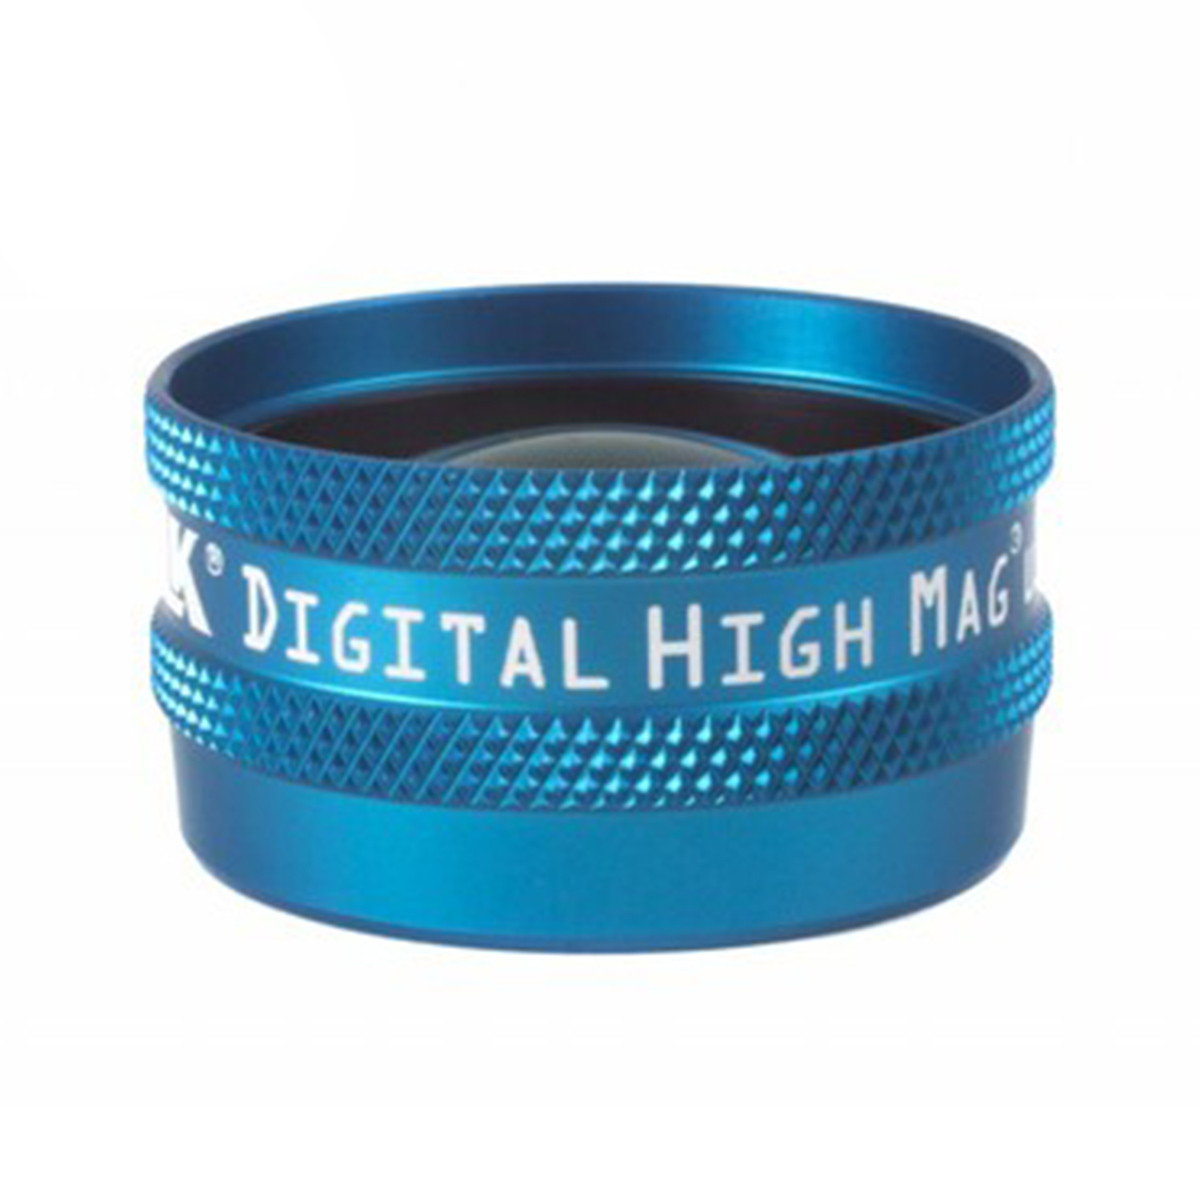 Volk Digital High Mag Lens aqua